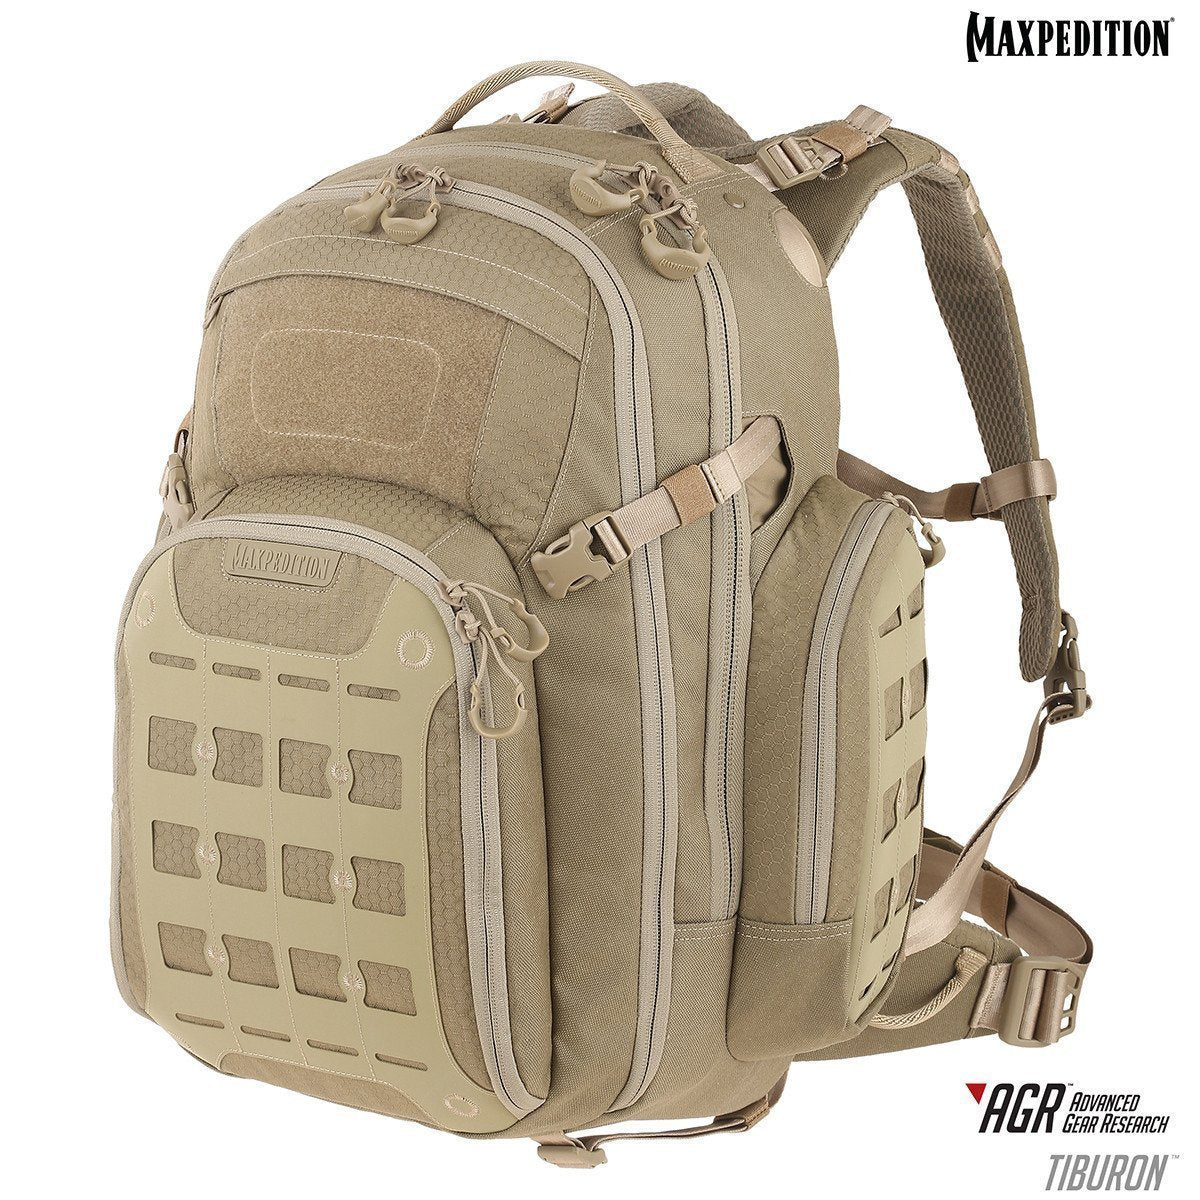 Maxpedition Tiburon Backpack 34L Backpacks Maxpedition Tan Tactical Gear Supplier Tactical Distributors Australia